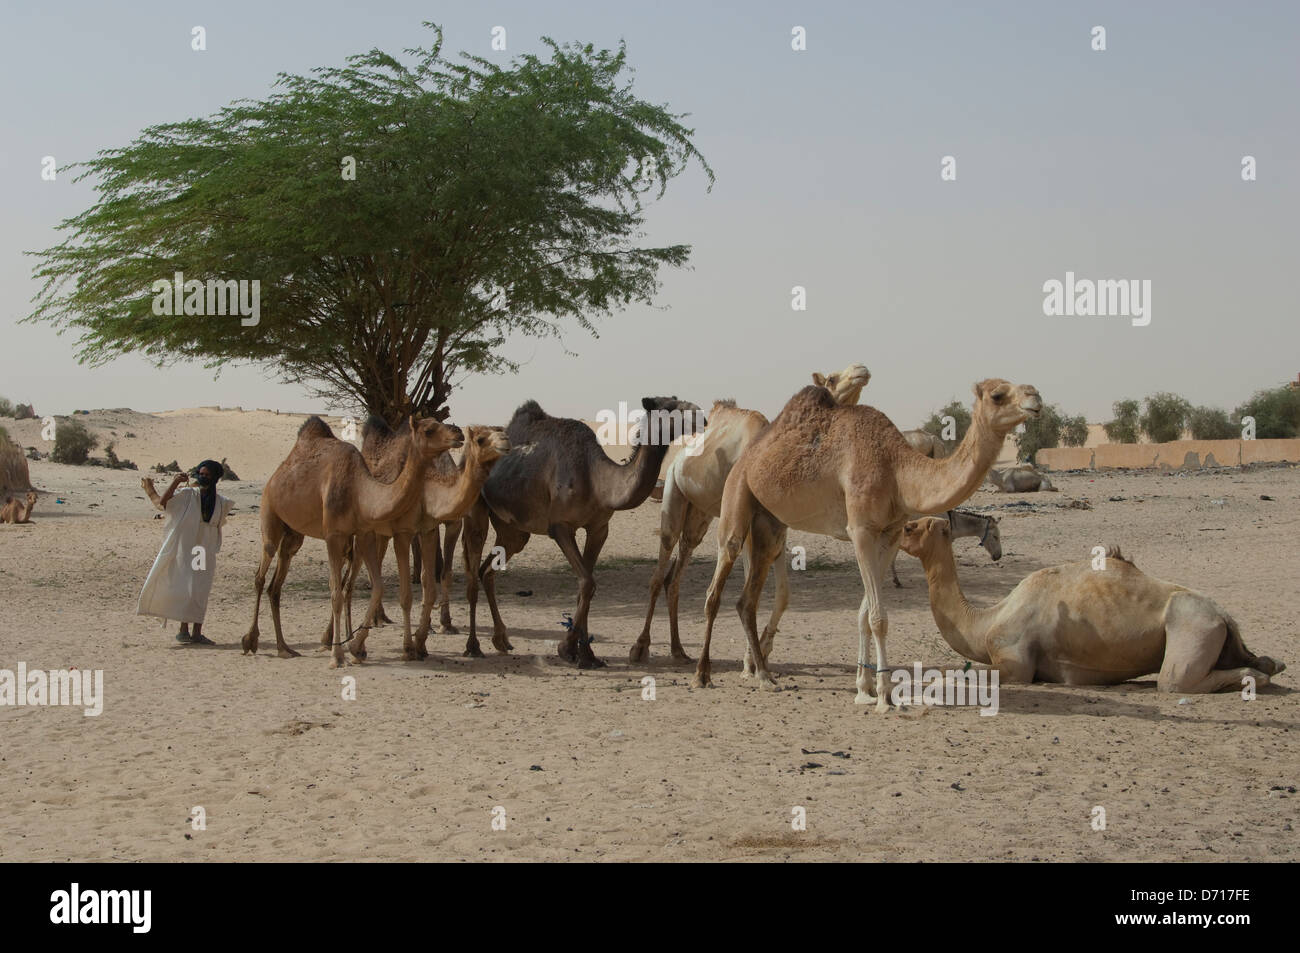 Mali, Tombouctou, ville au bord du désert du Sahara, l'homme touareg avec chameaux Banque D'Images